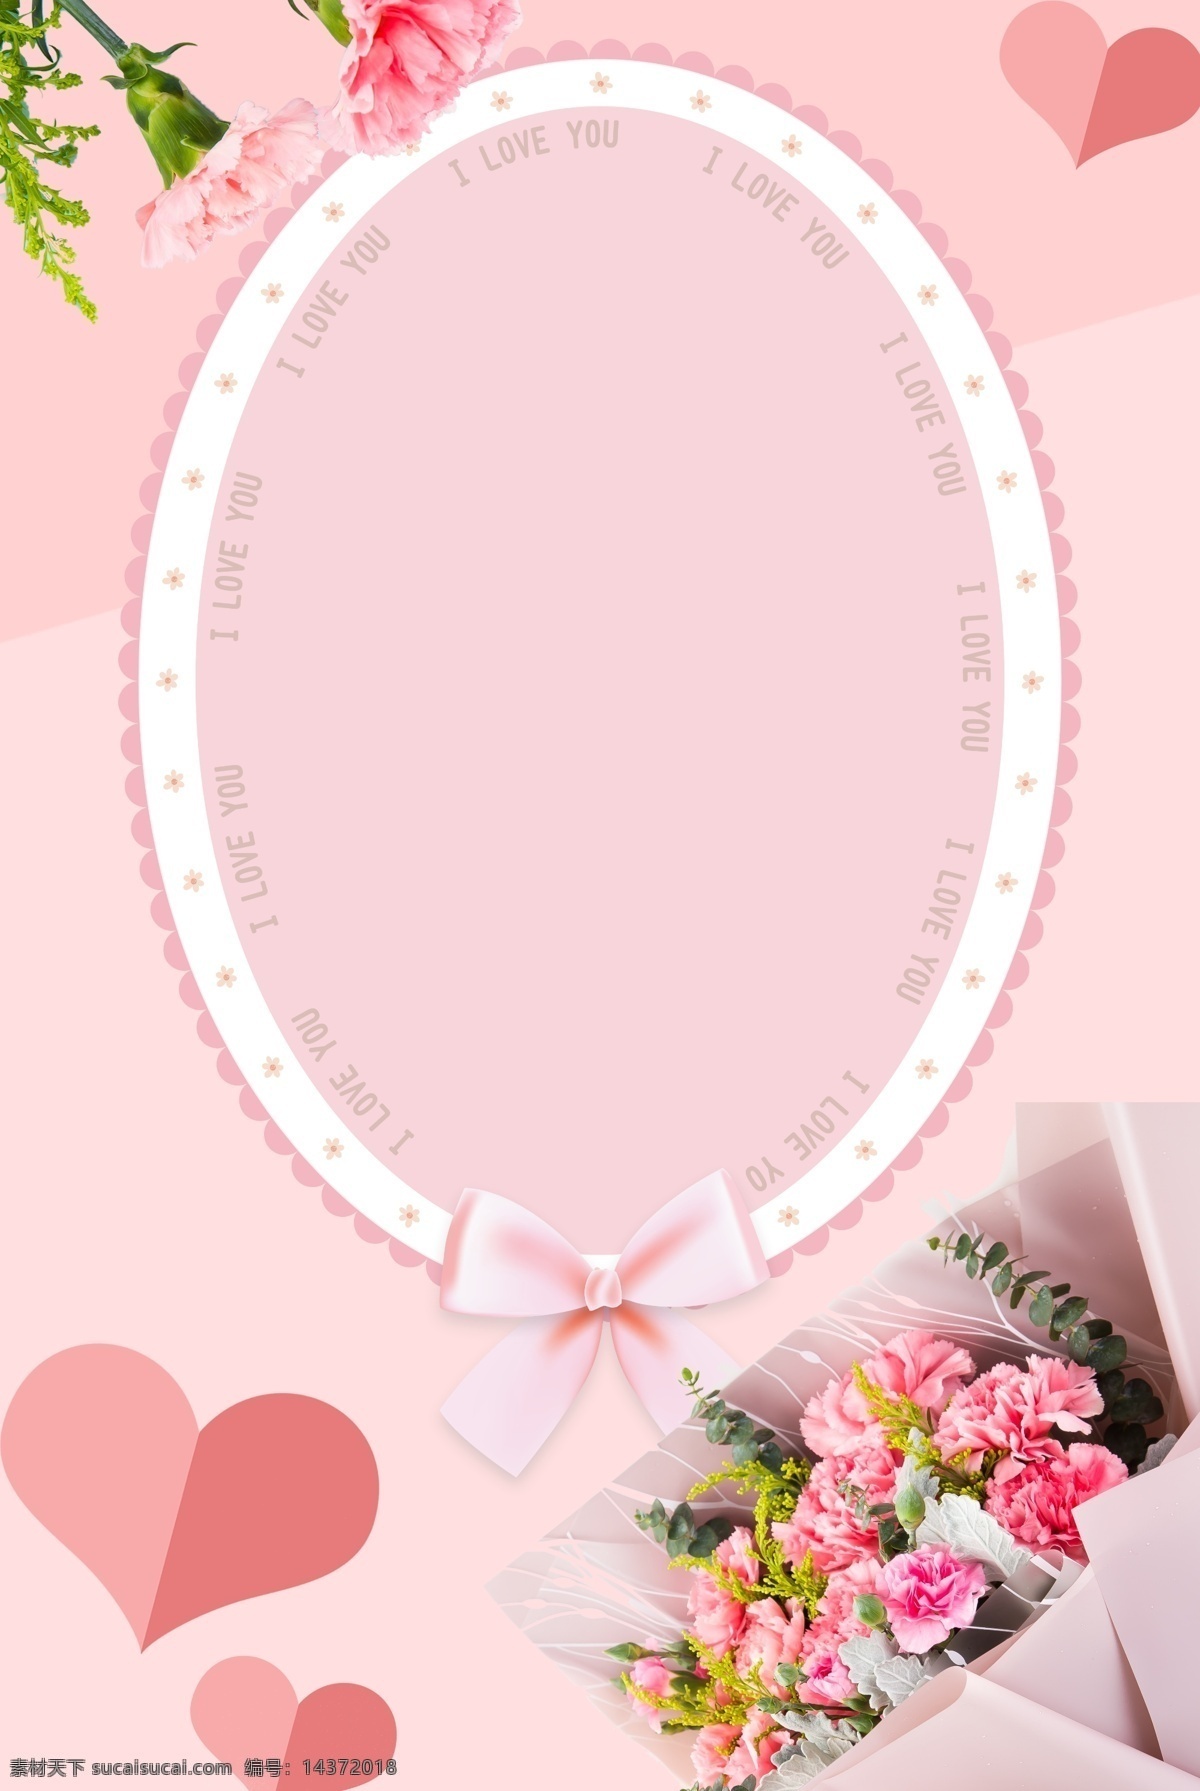 五月 你好 清新 文艺 粉色 海报 背景 五月你好 粉色花束 问候 温馨 爱心 康乃馨 蕾丝边框